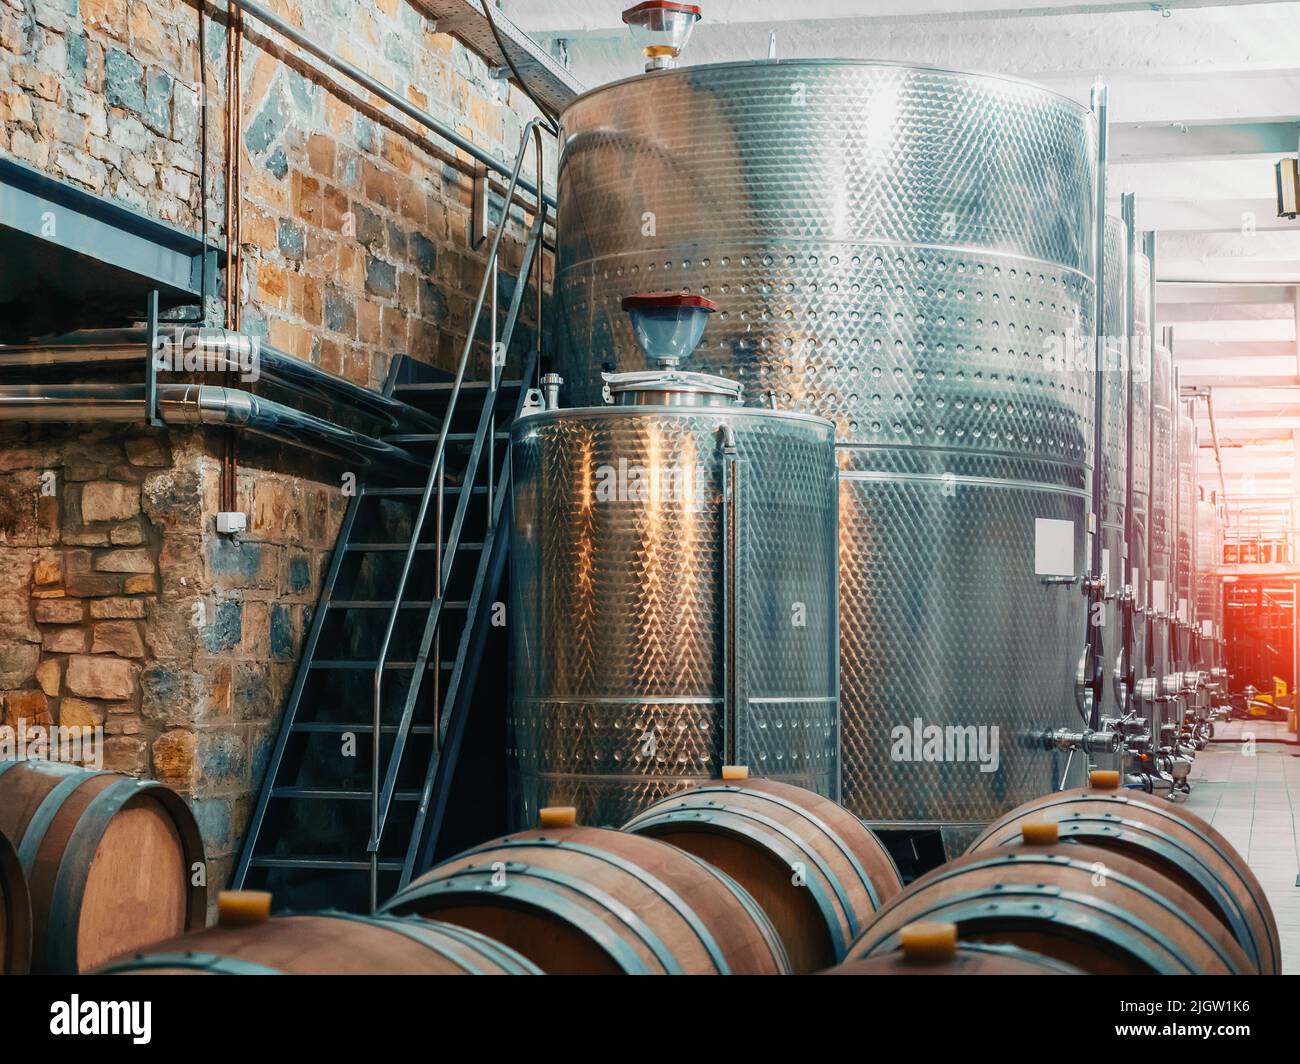 Azienda vinicola con vasche d'acciaio per la fermentazione e botti di legno per il processo di invecchiamento, concetto di vinificazione, industria alimentare. Foto Stock